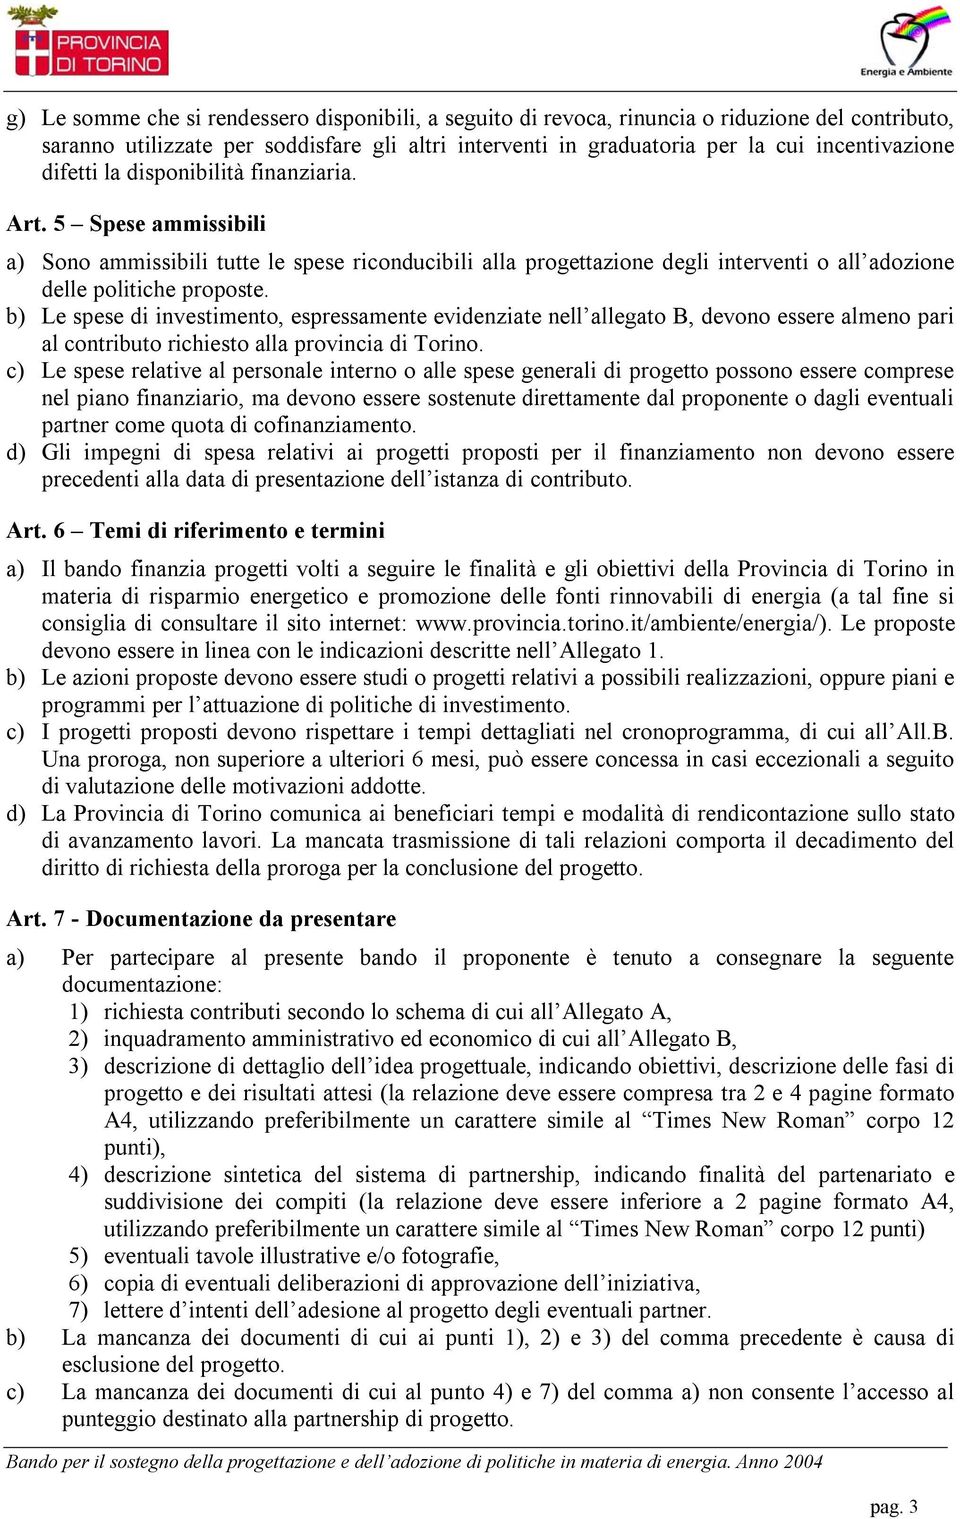 b) Le spese di investimento, espressamente evidenziate nell allegato B, devono essere almeno pari al contributo richiesto alla provincia di Torino.